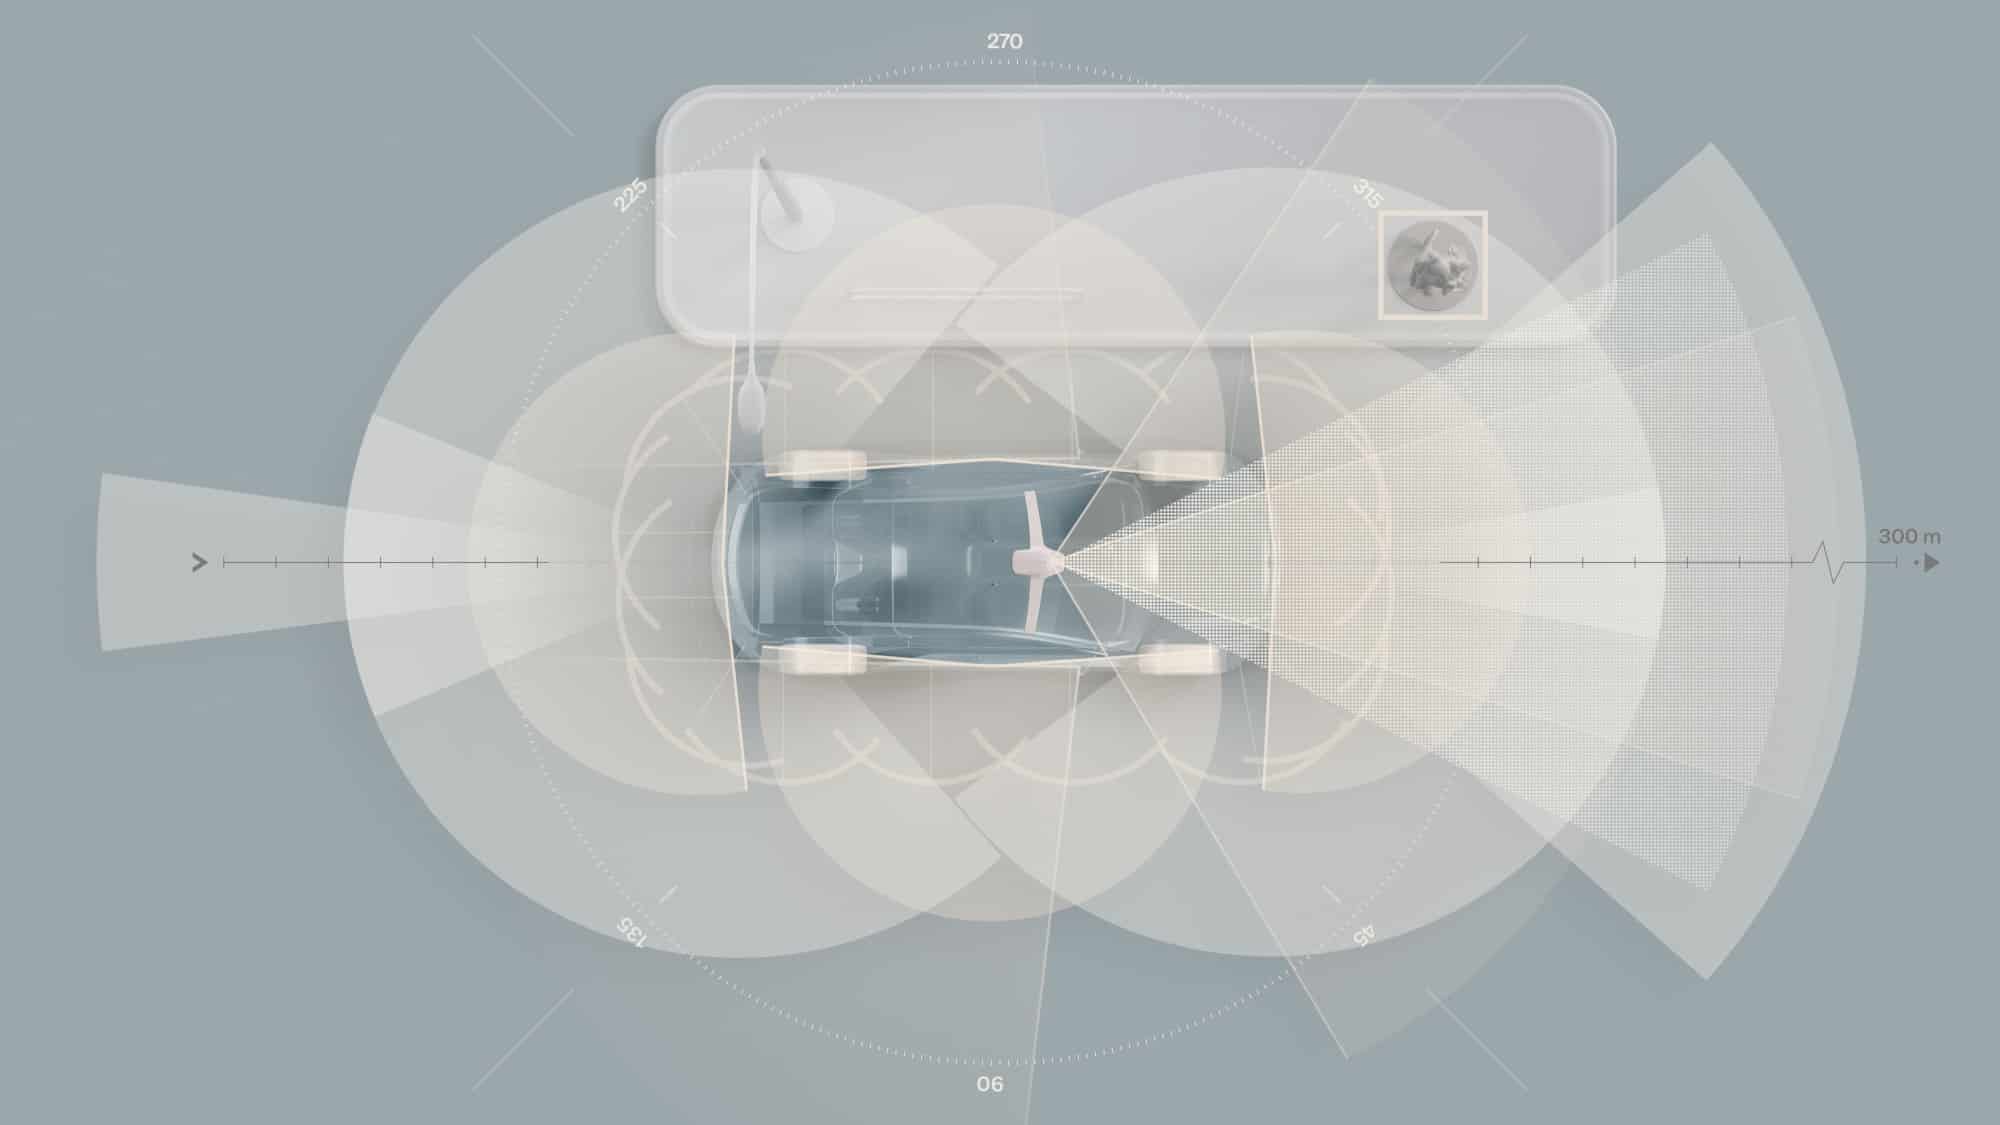 Volvo aplica Inteligencia Artificial en seguridad